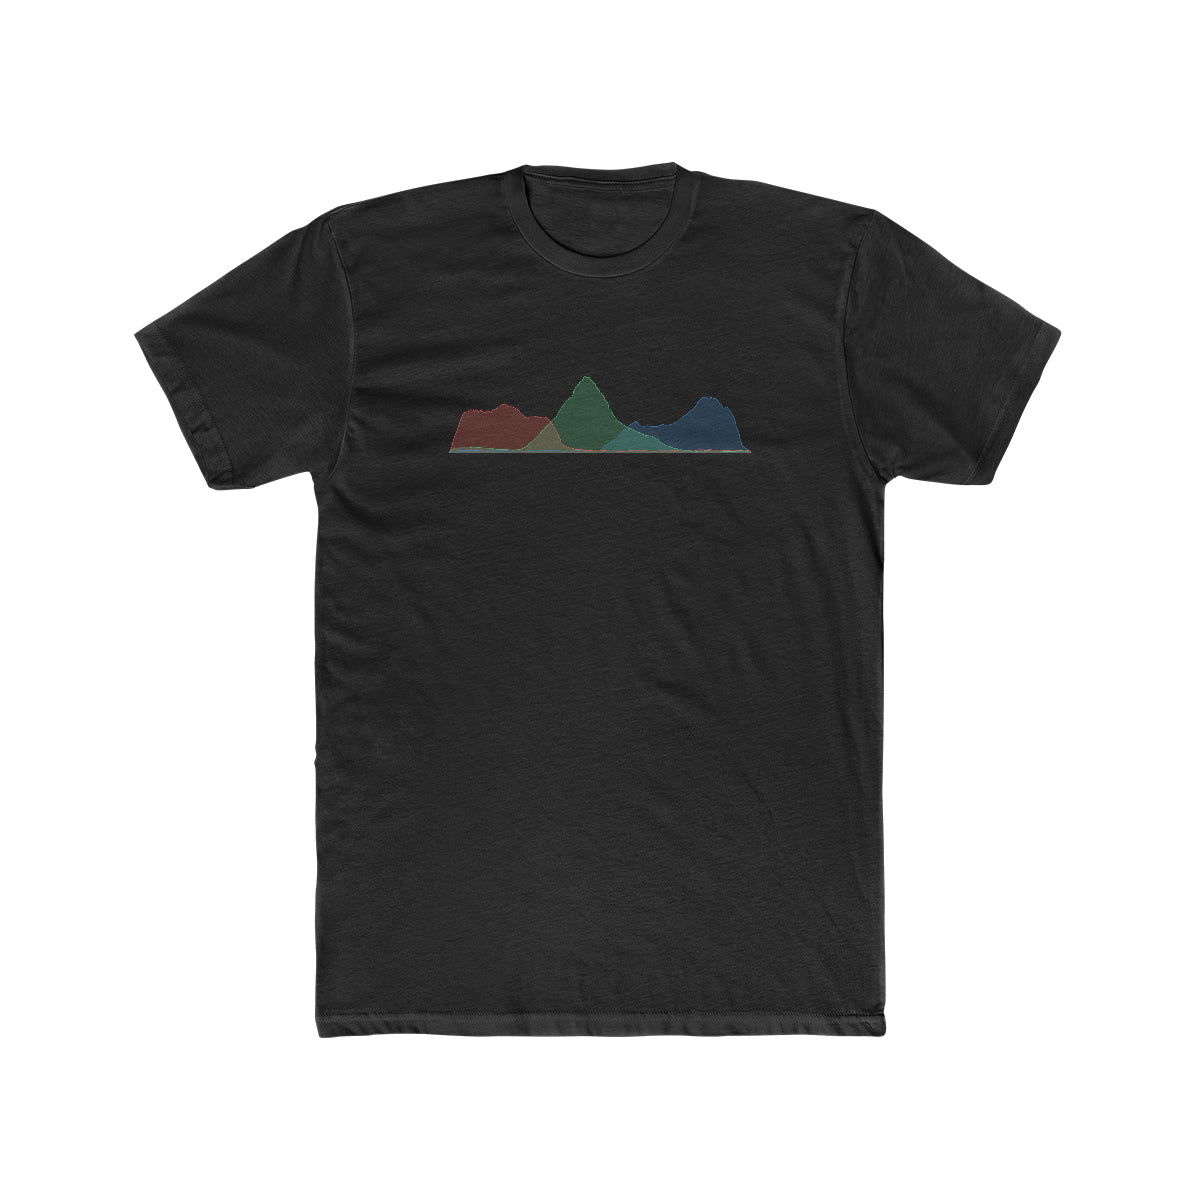 Limited Edition Glacier National Park T-Shirt - Histogram Design